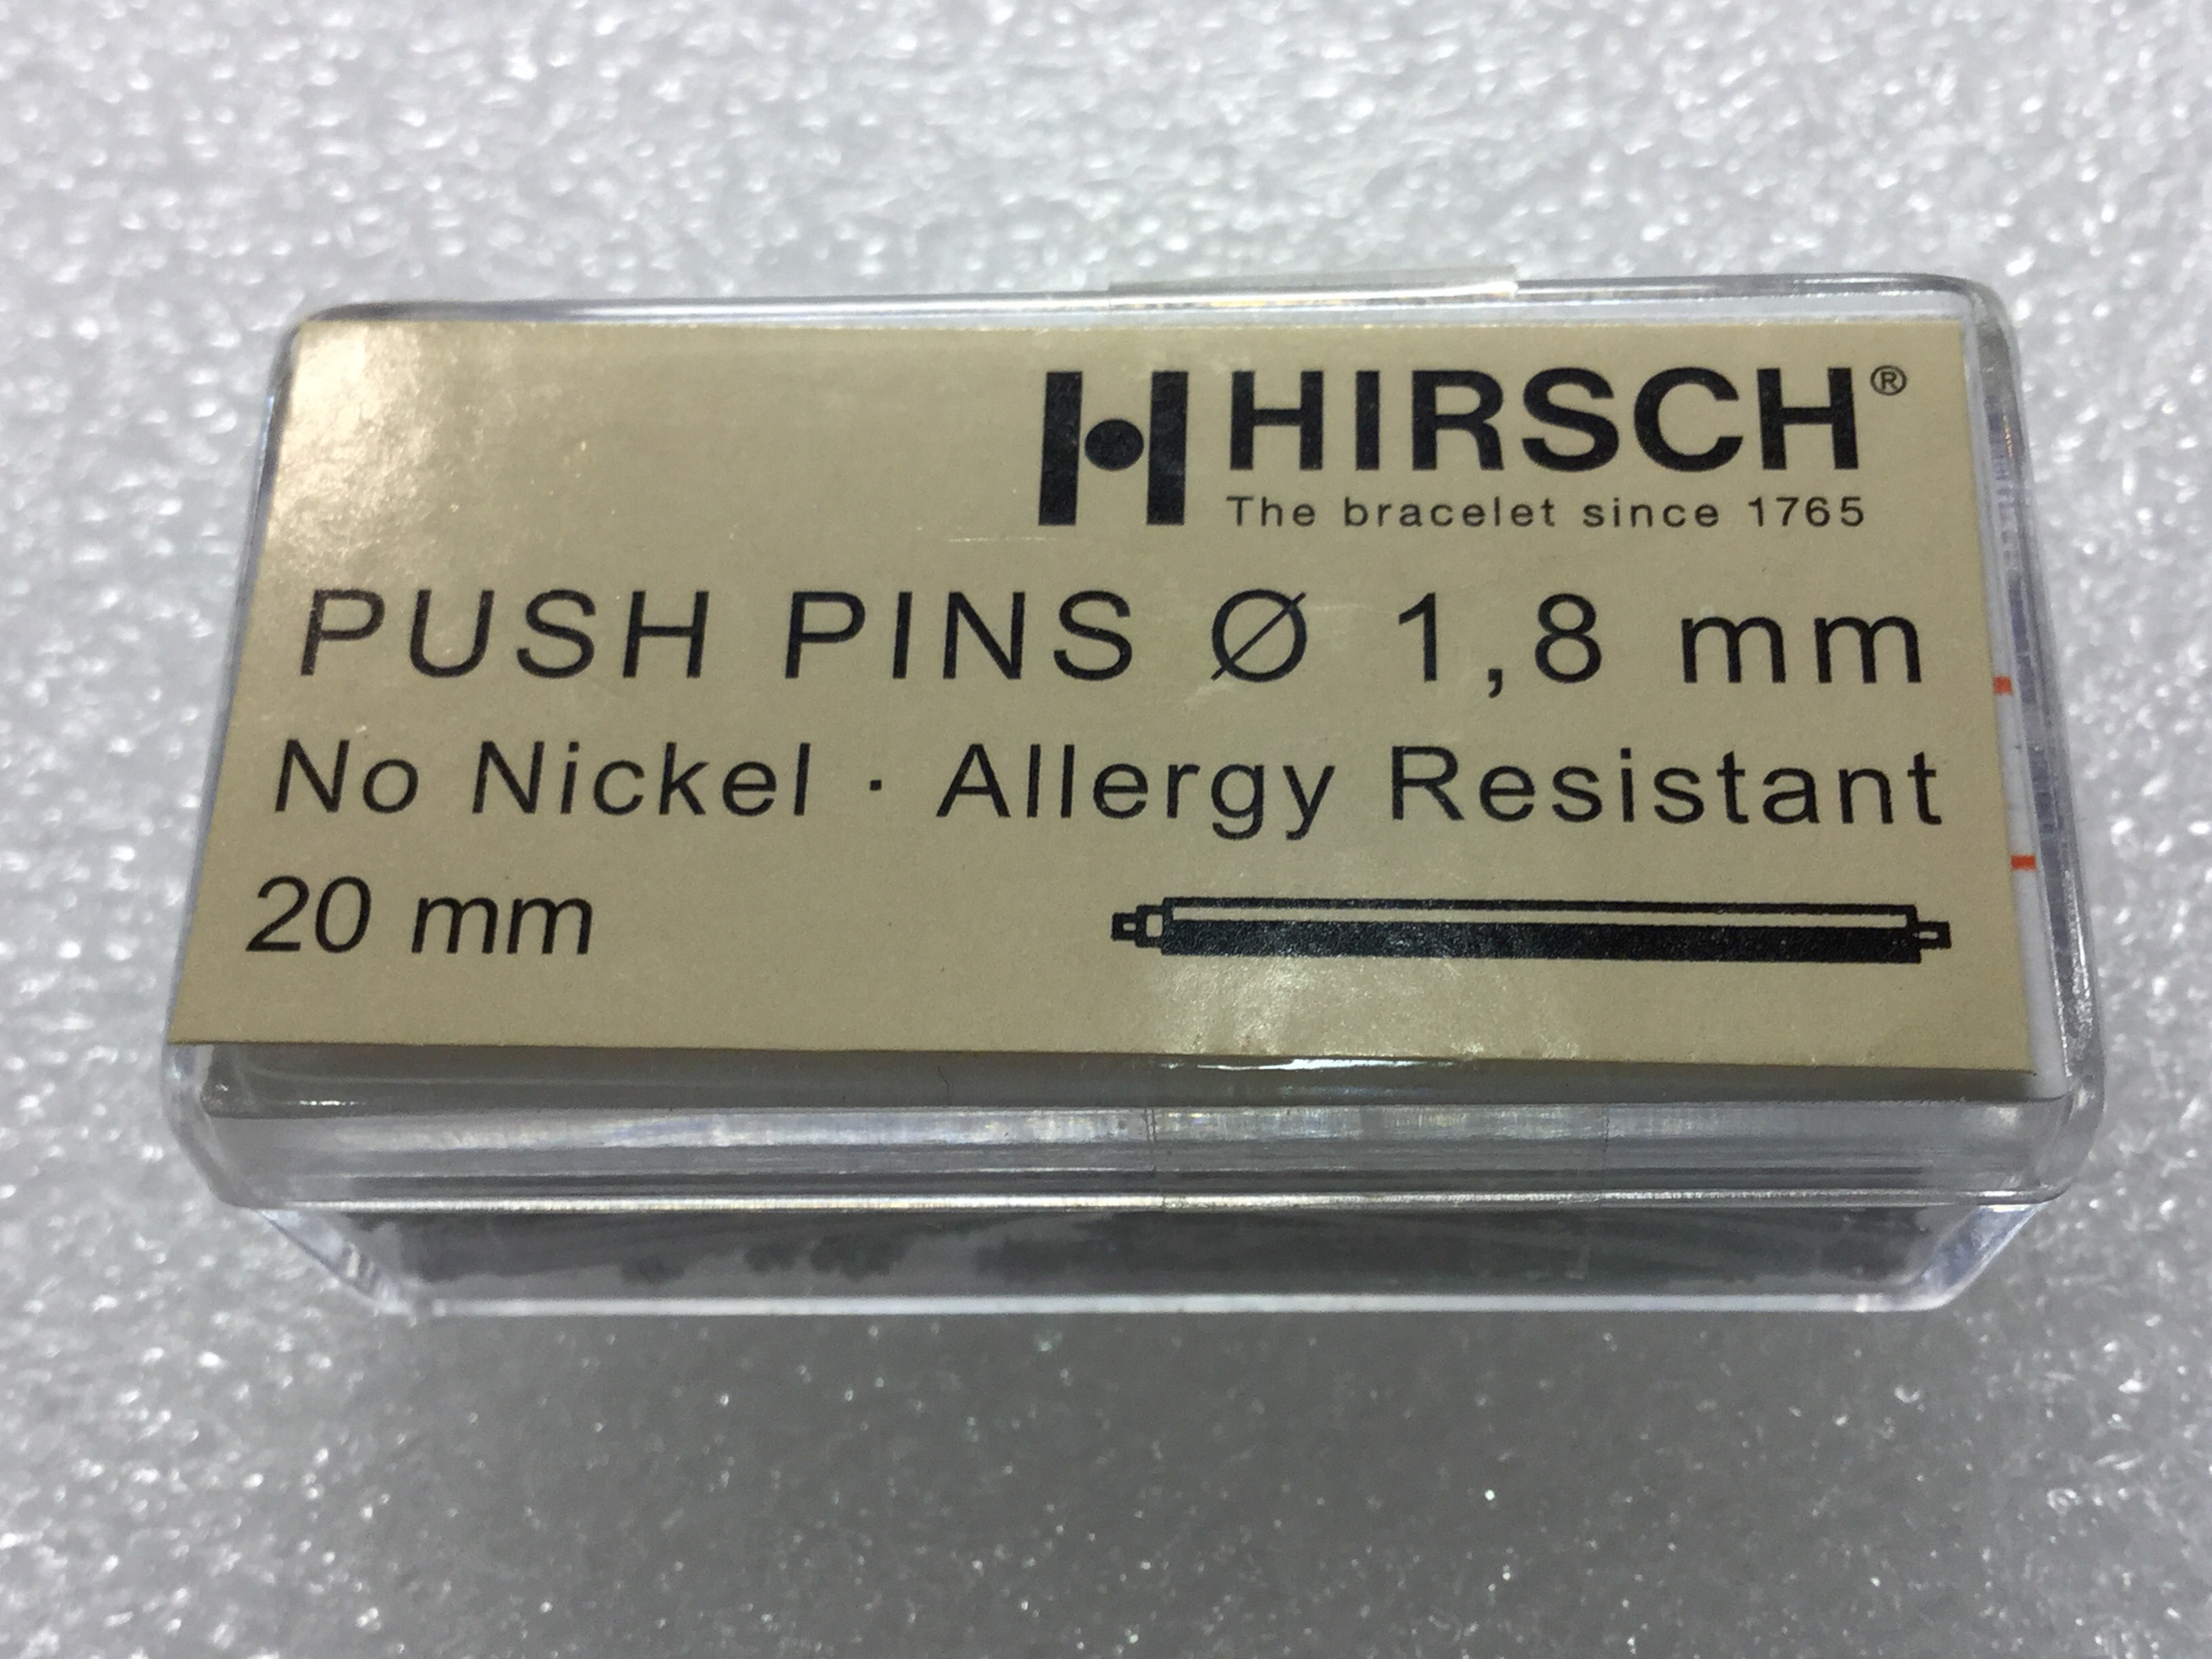 Caja de pasadores Hirsch 1,8 mm de diametro